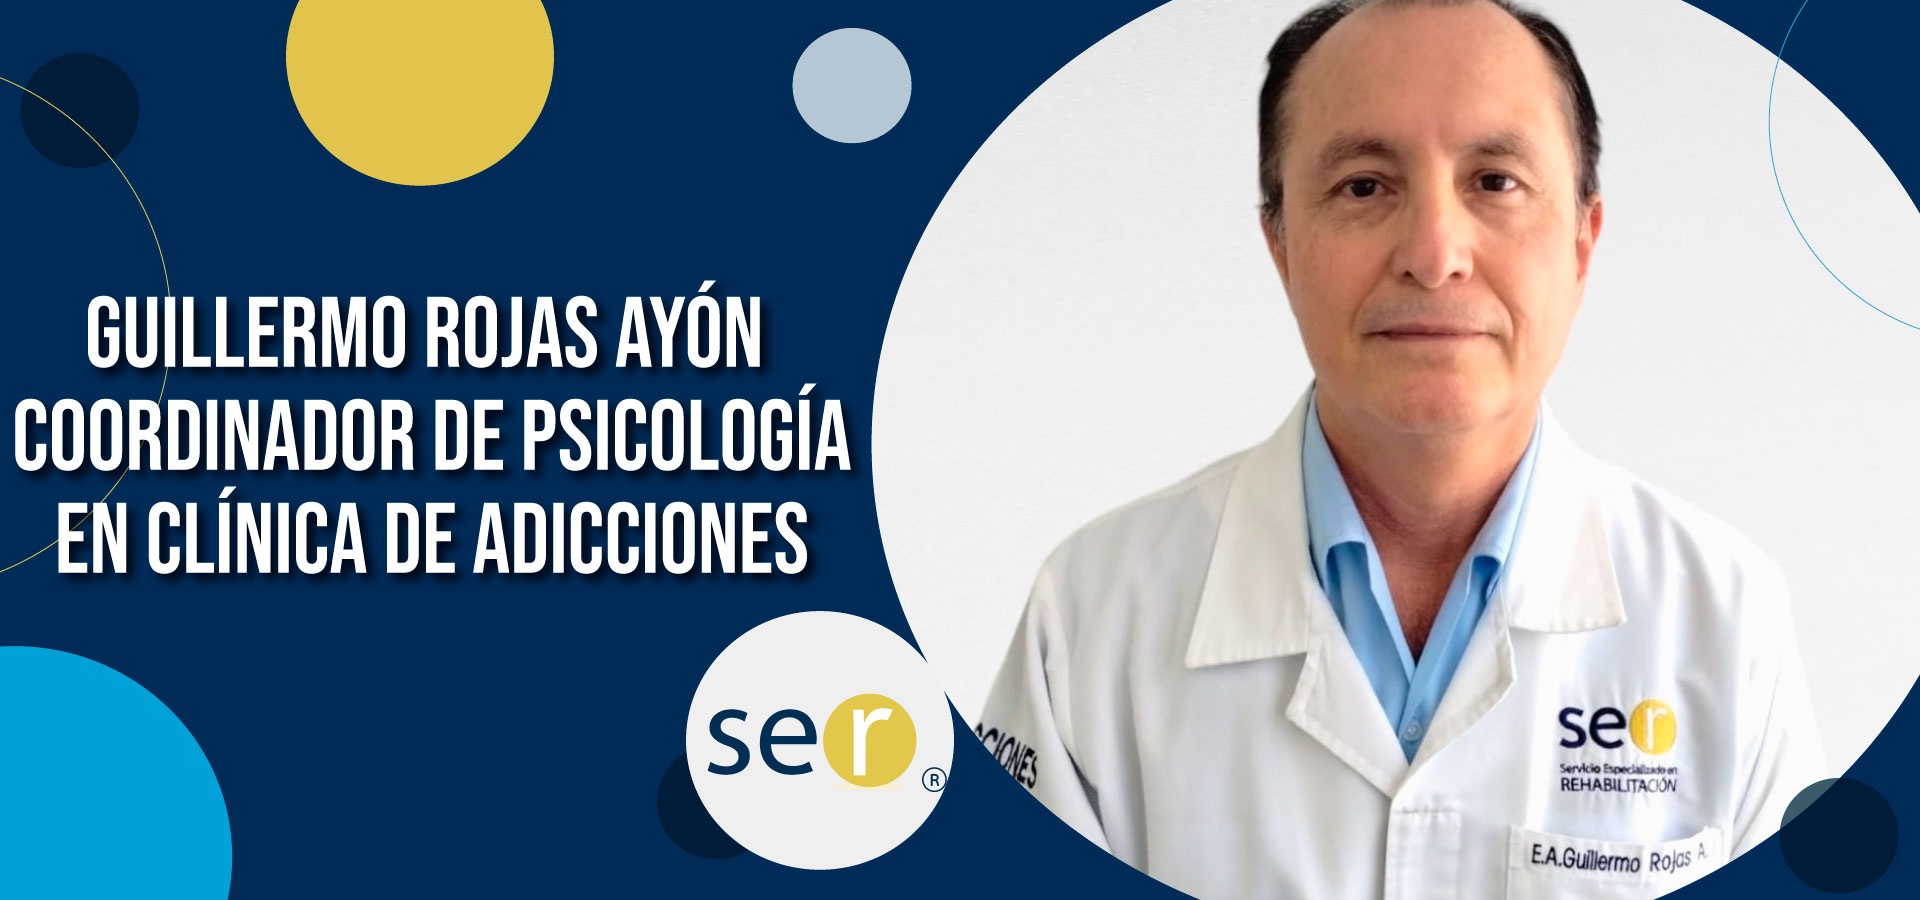 Clinica ser banner Guillermo Rojas Ayon Coordinador de Psicologia en Clinica de Adicciones - Clínica-SER